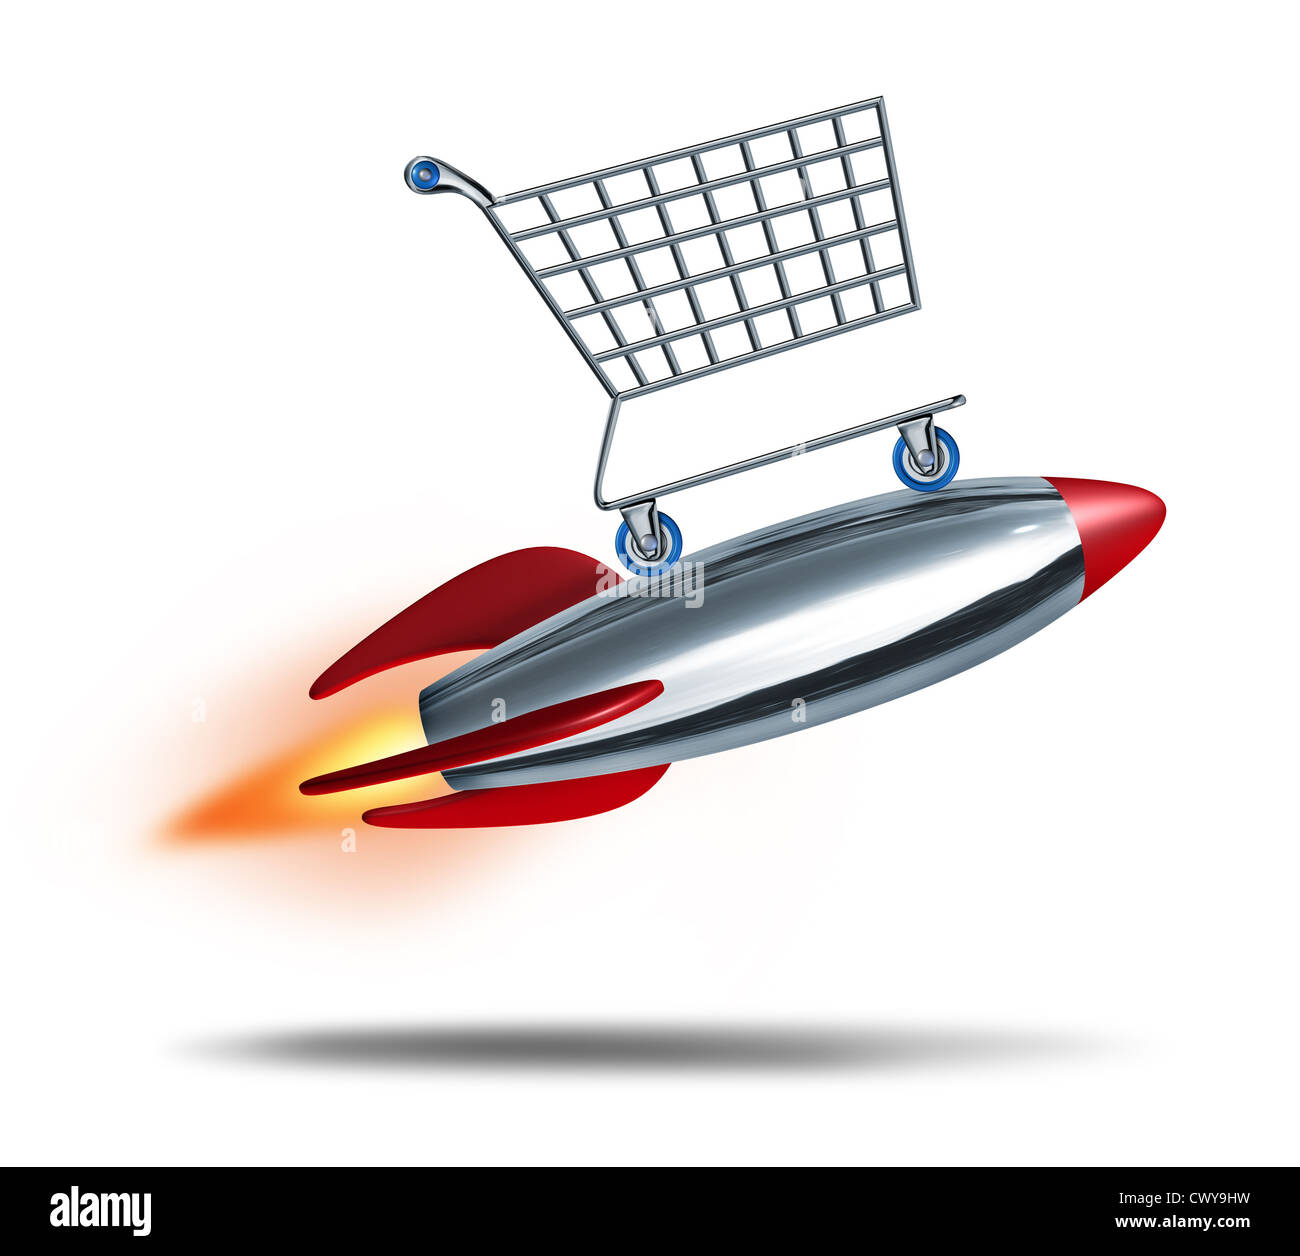 Geschwindigkeit Einkaufs- und schnellen check out Konzept mit einem Warenkorb fliegen in der Luft mit einer Rakete Explosion als Symbol der schnellen Konsumenten-sales-Service auf einem weißen Hintergrund. Stockfoto